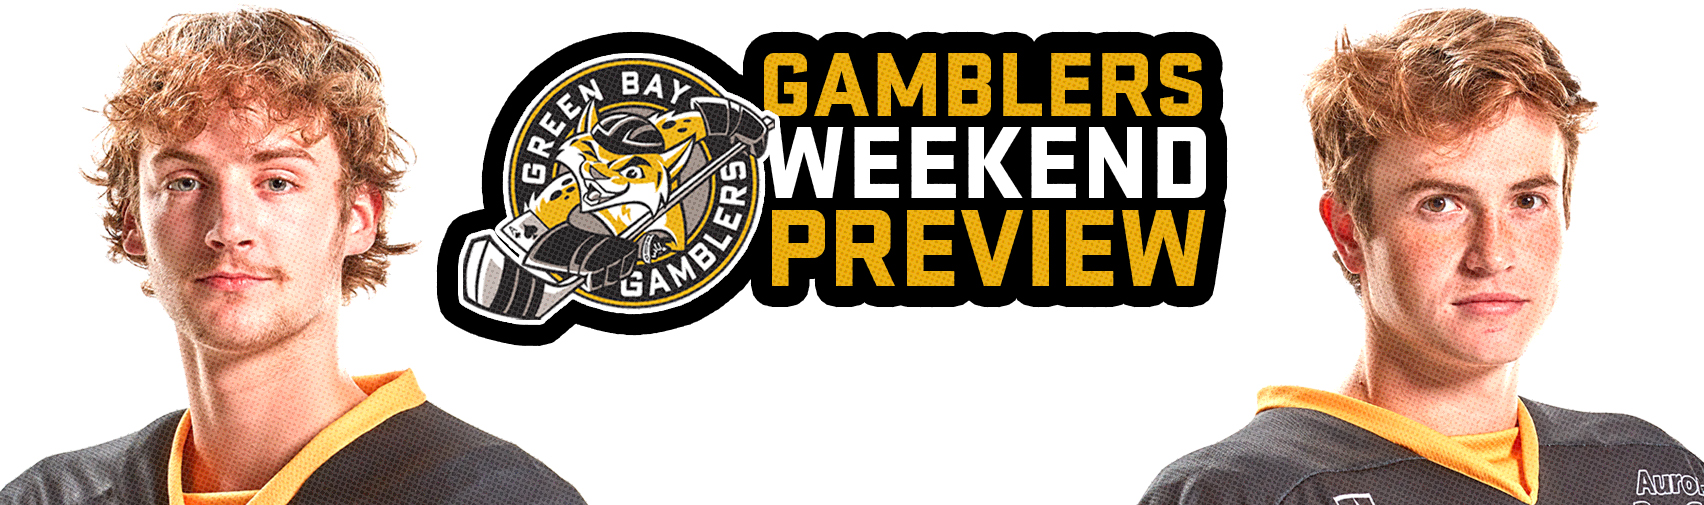 gamblers-weekend-preview-12-28-12-30-12-31